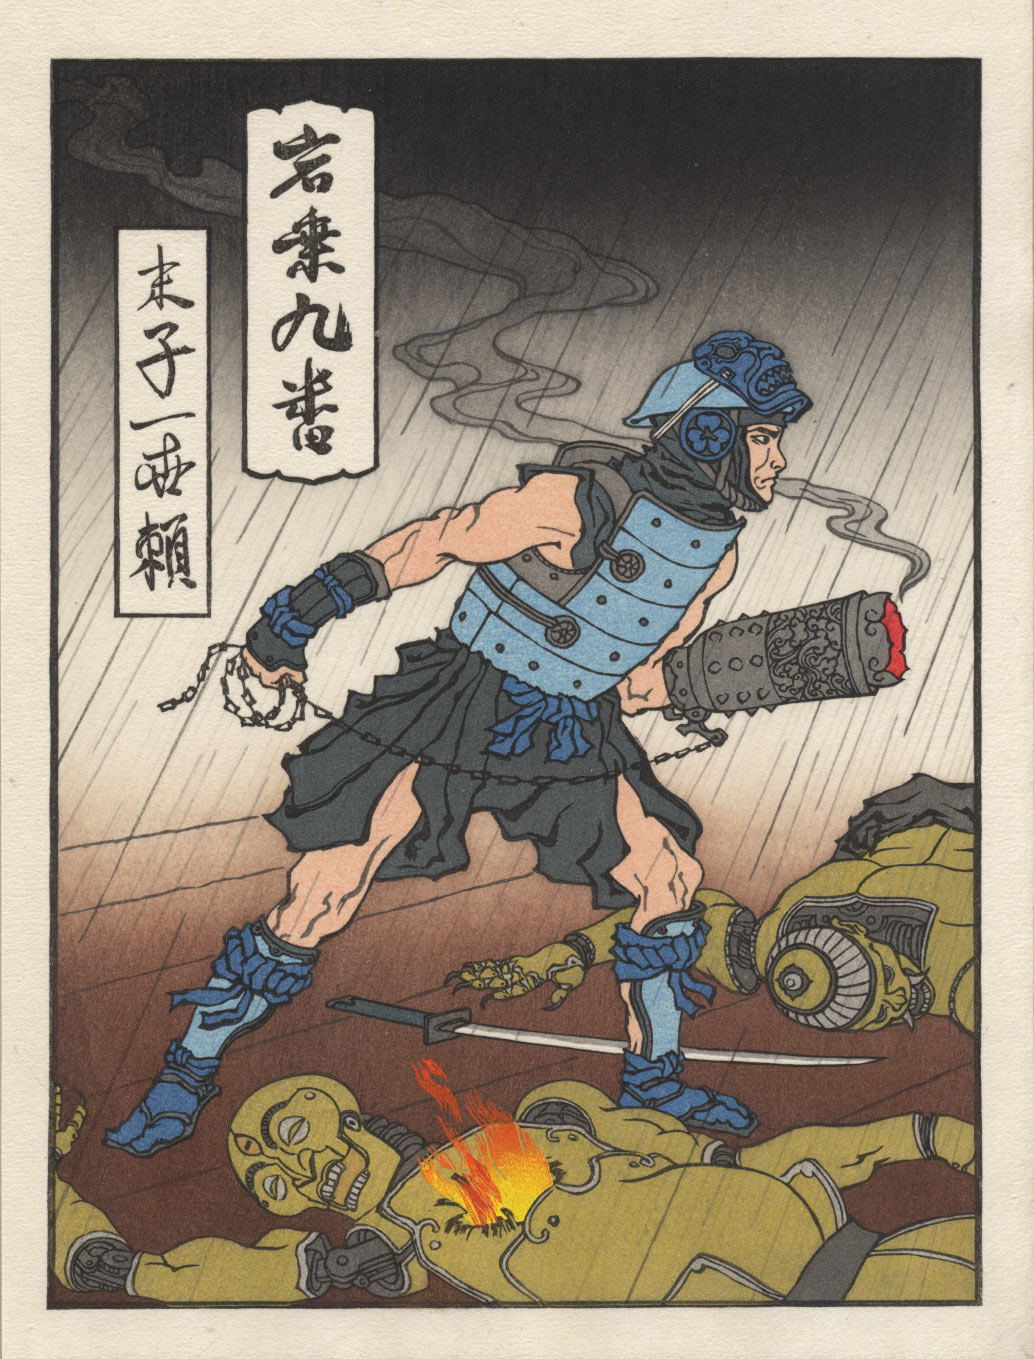 Jed Henry's 'Ukiyo-e Heroes' : Blue Storm